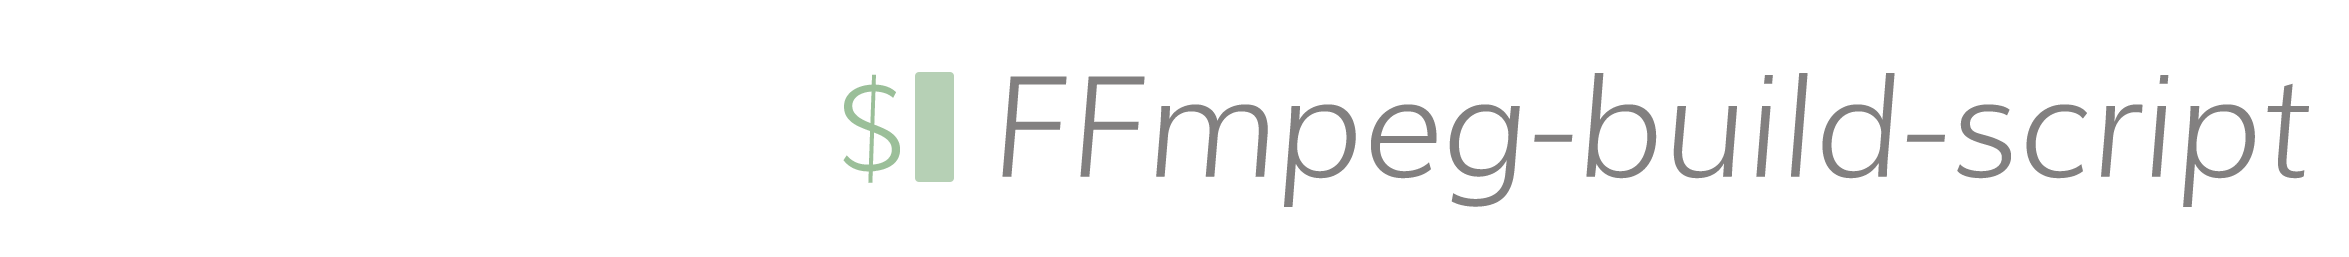 FFmpeg build script